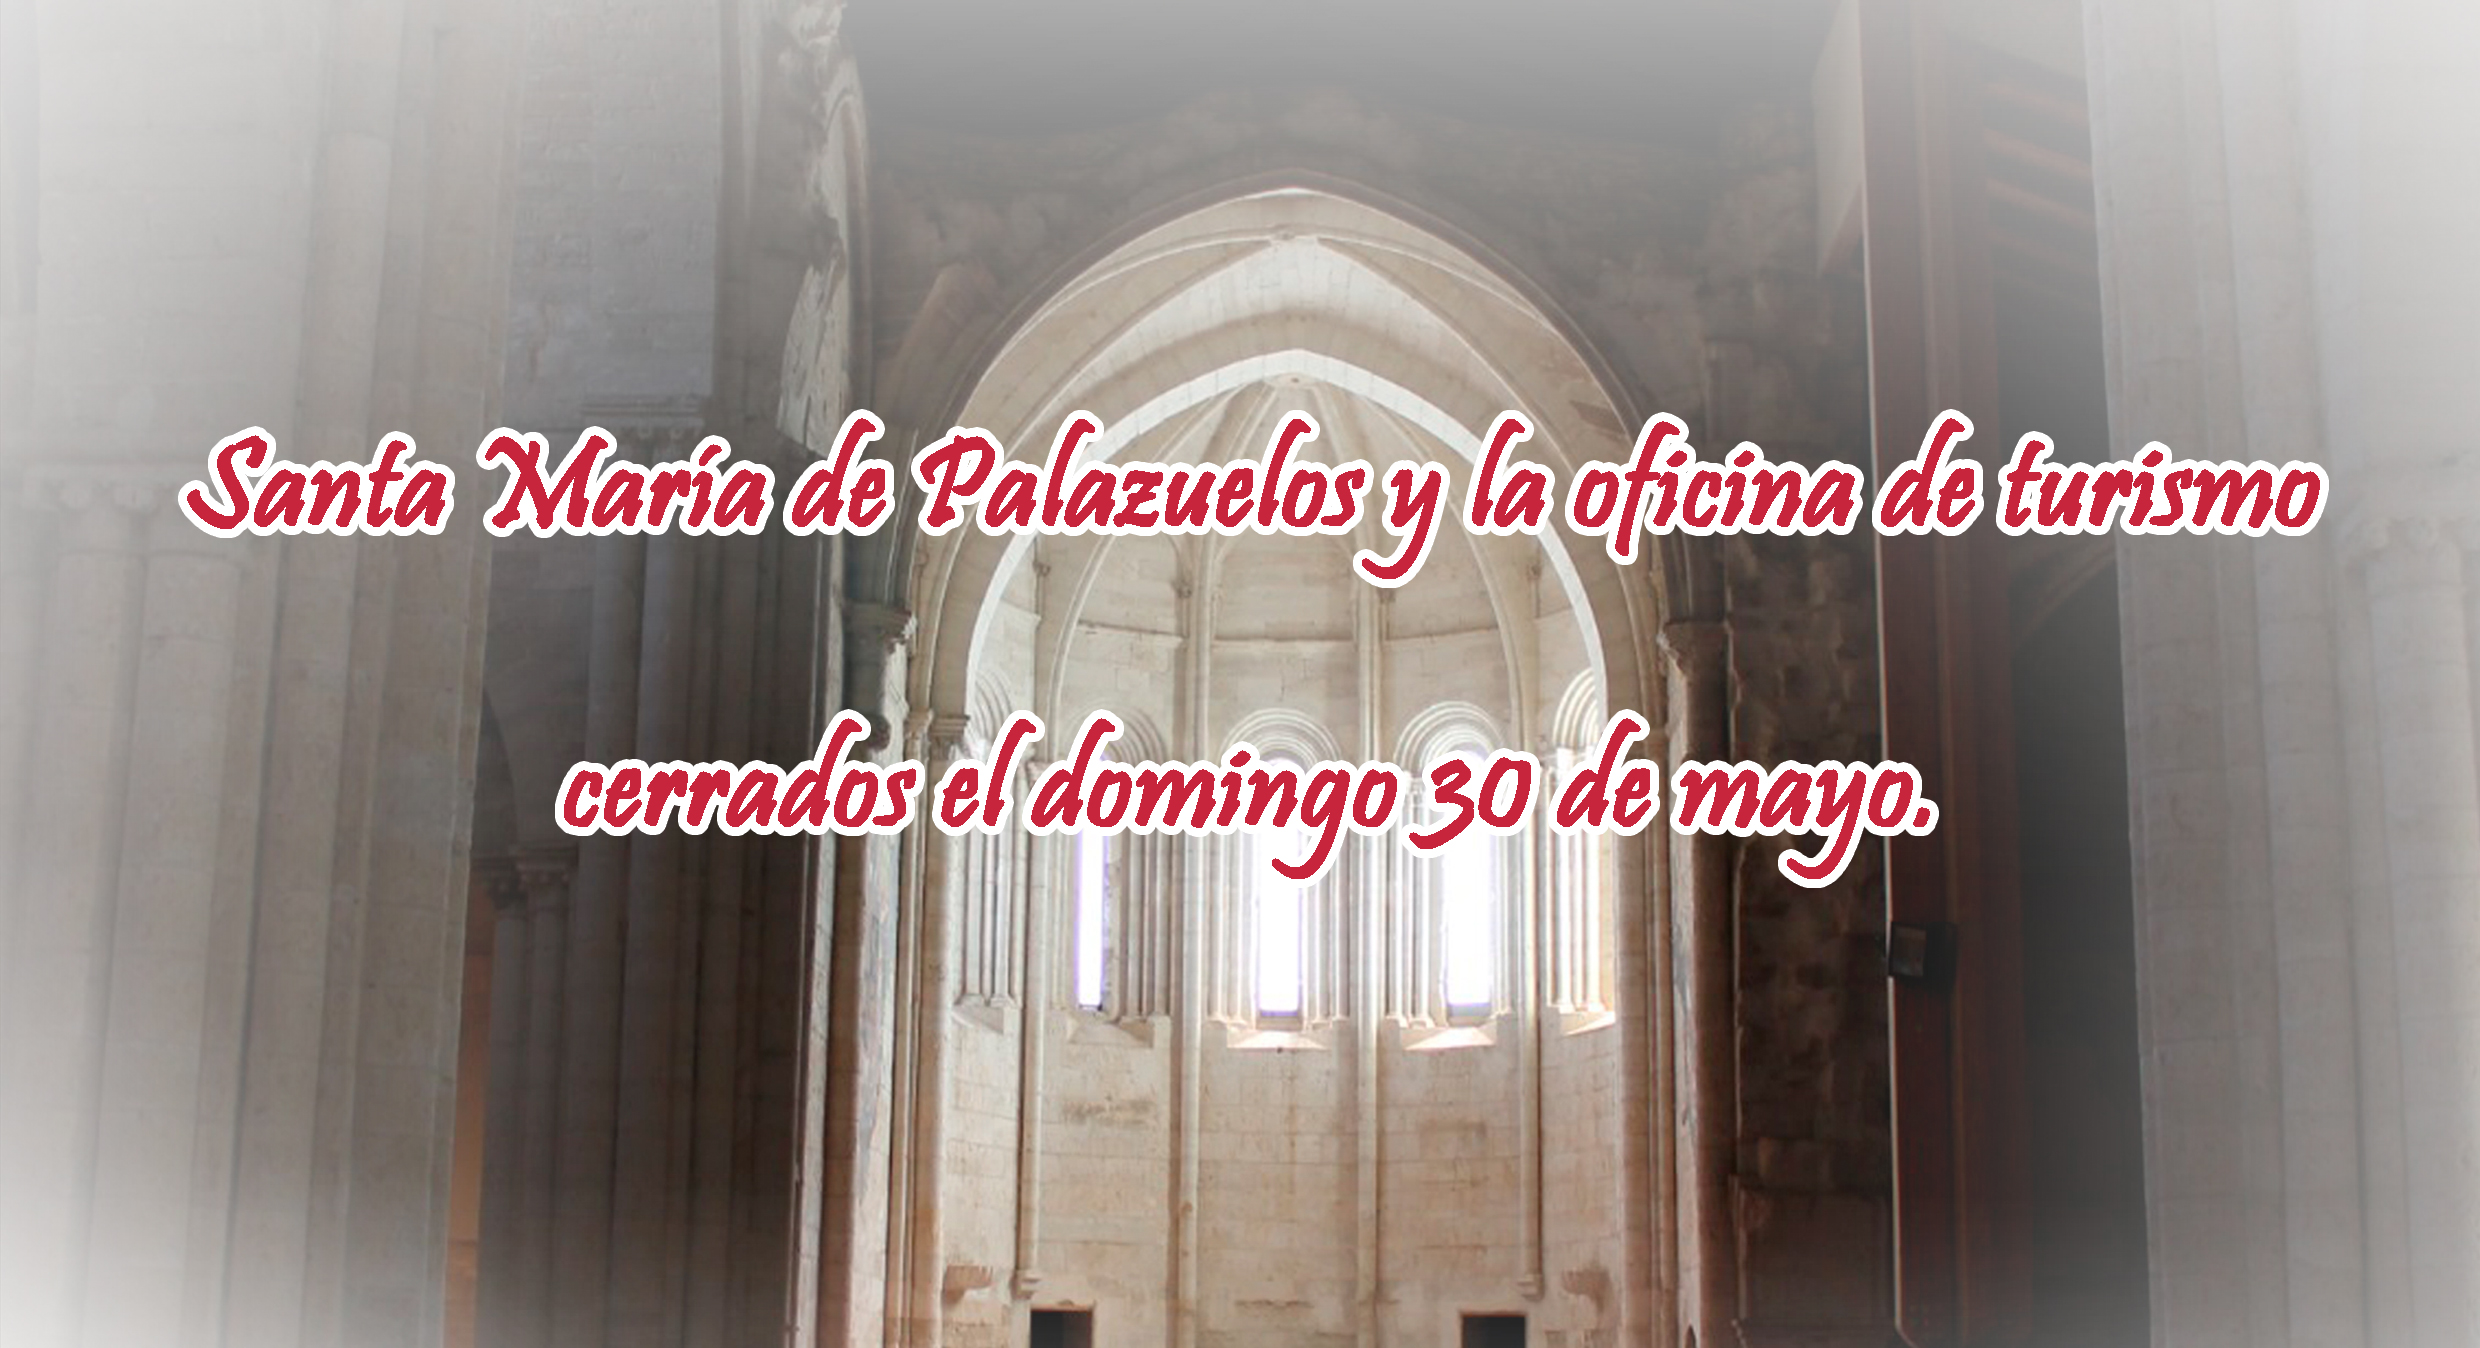 Oficina de Turismo y Monasterio de Palazuelos cerrados del 7 al 13 de junio